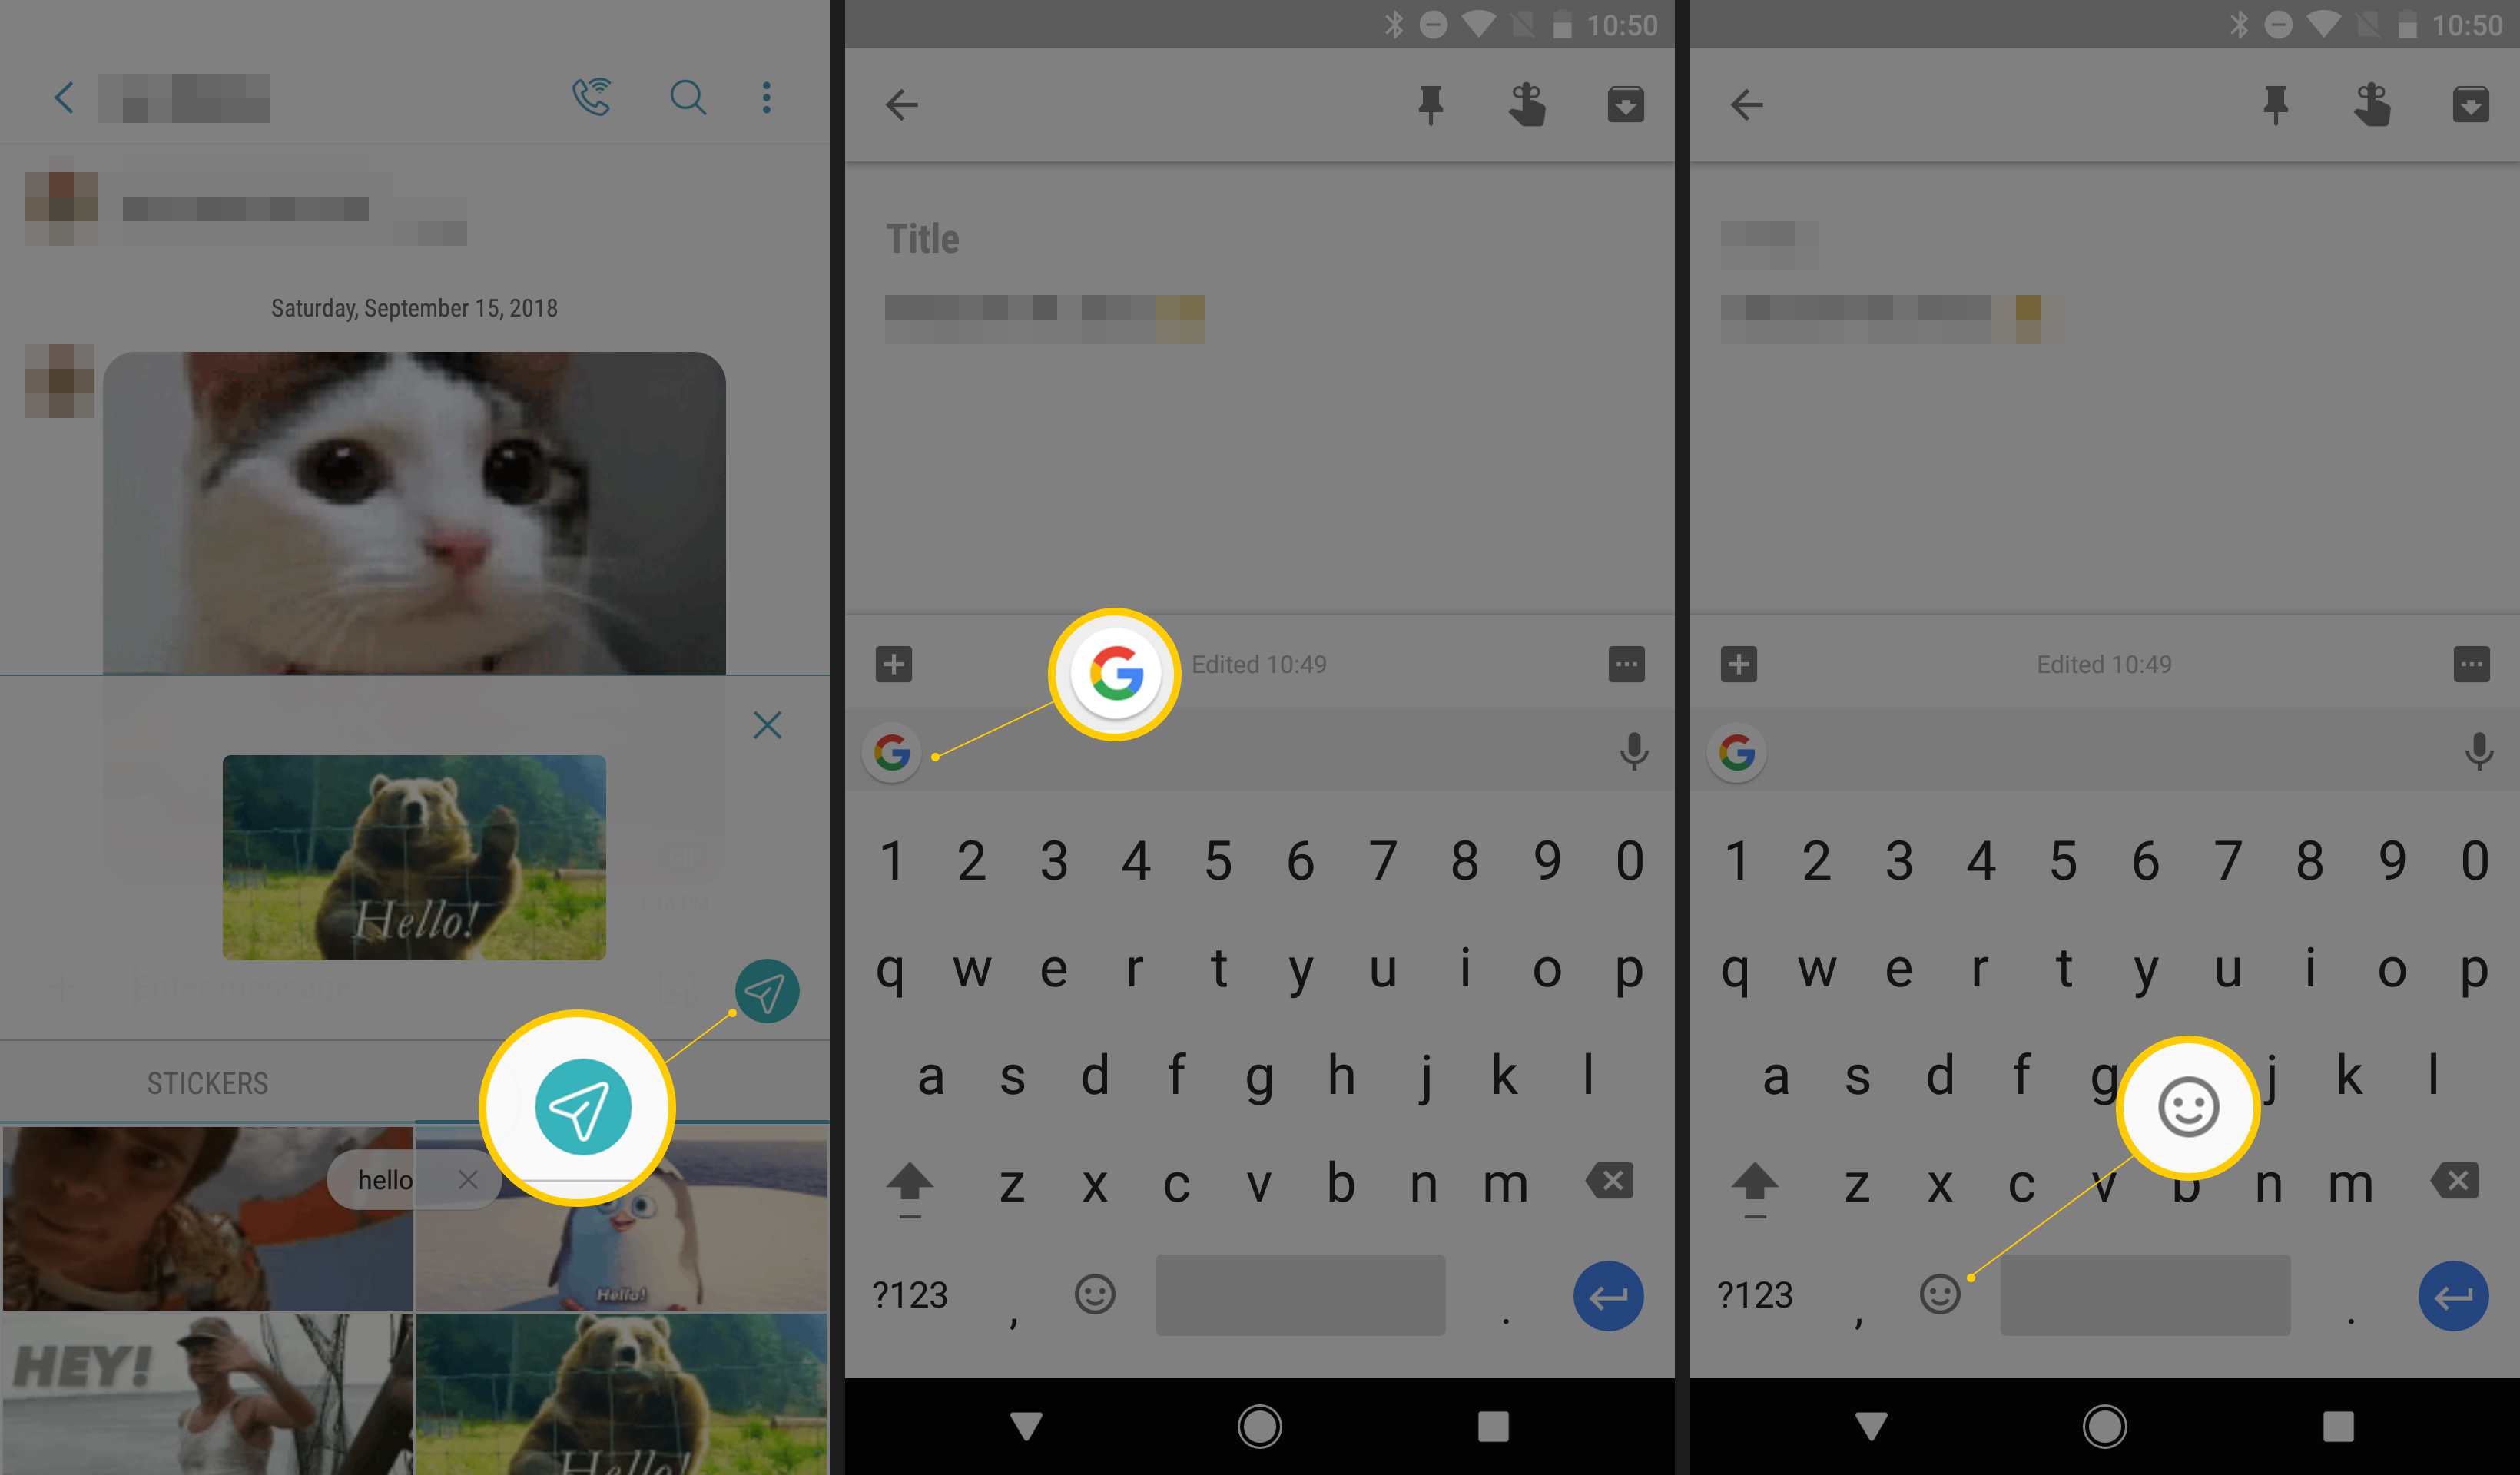 Três telas do Android exibindo o botão Enviar, o ícone do Gboard e o ícone de emoticon no teclado